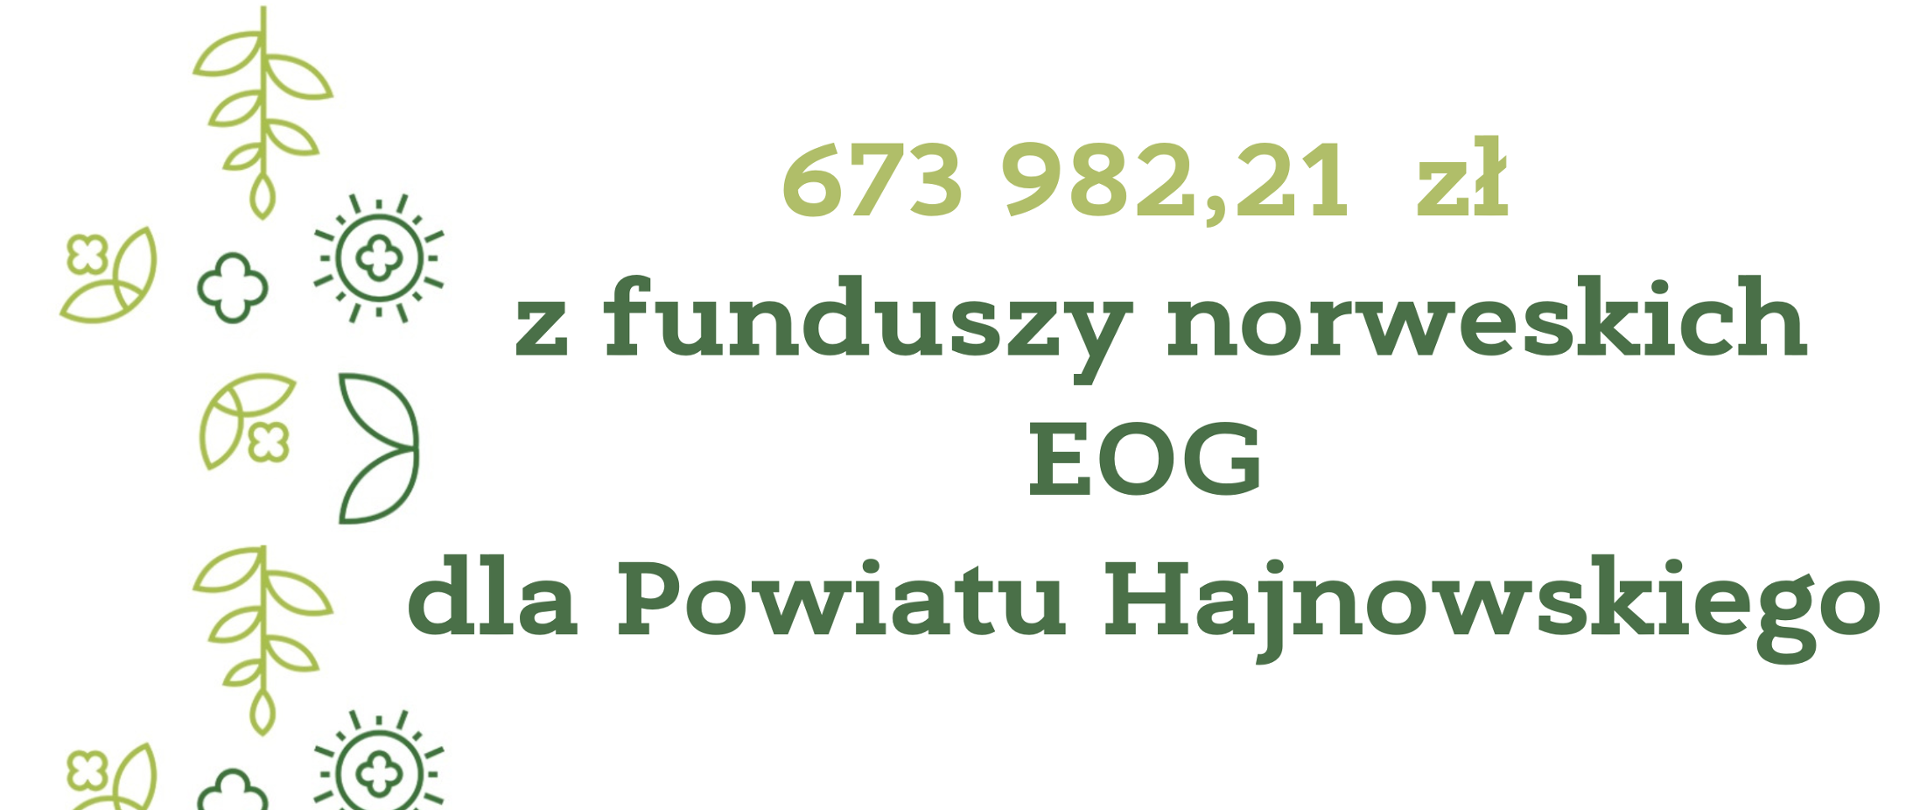 673 982,21 zł
z funduszy norweskich EOG
dla Powiatu Hajnowskiego